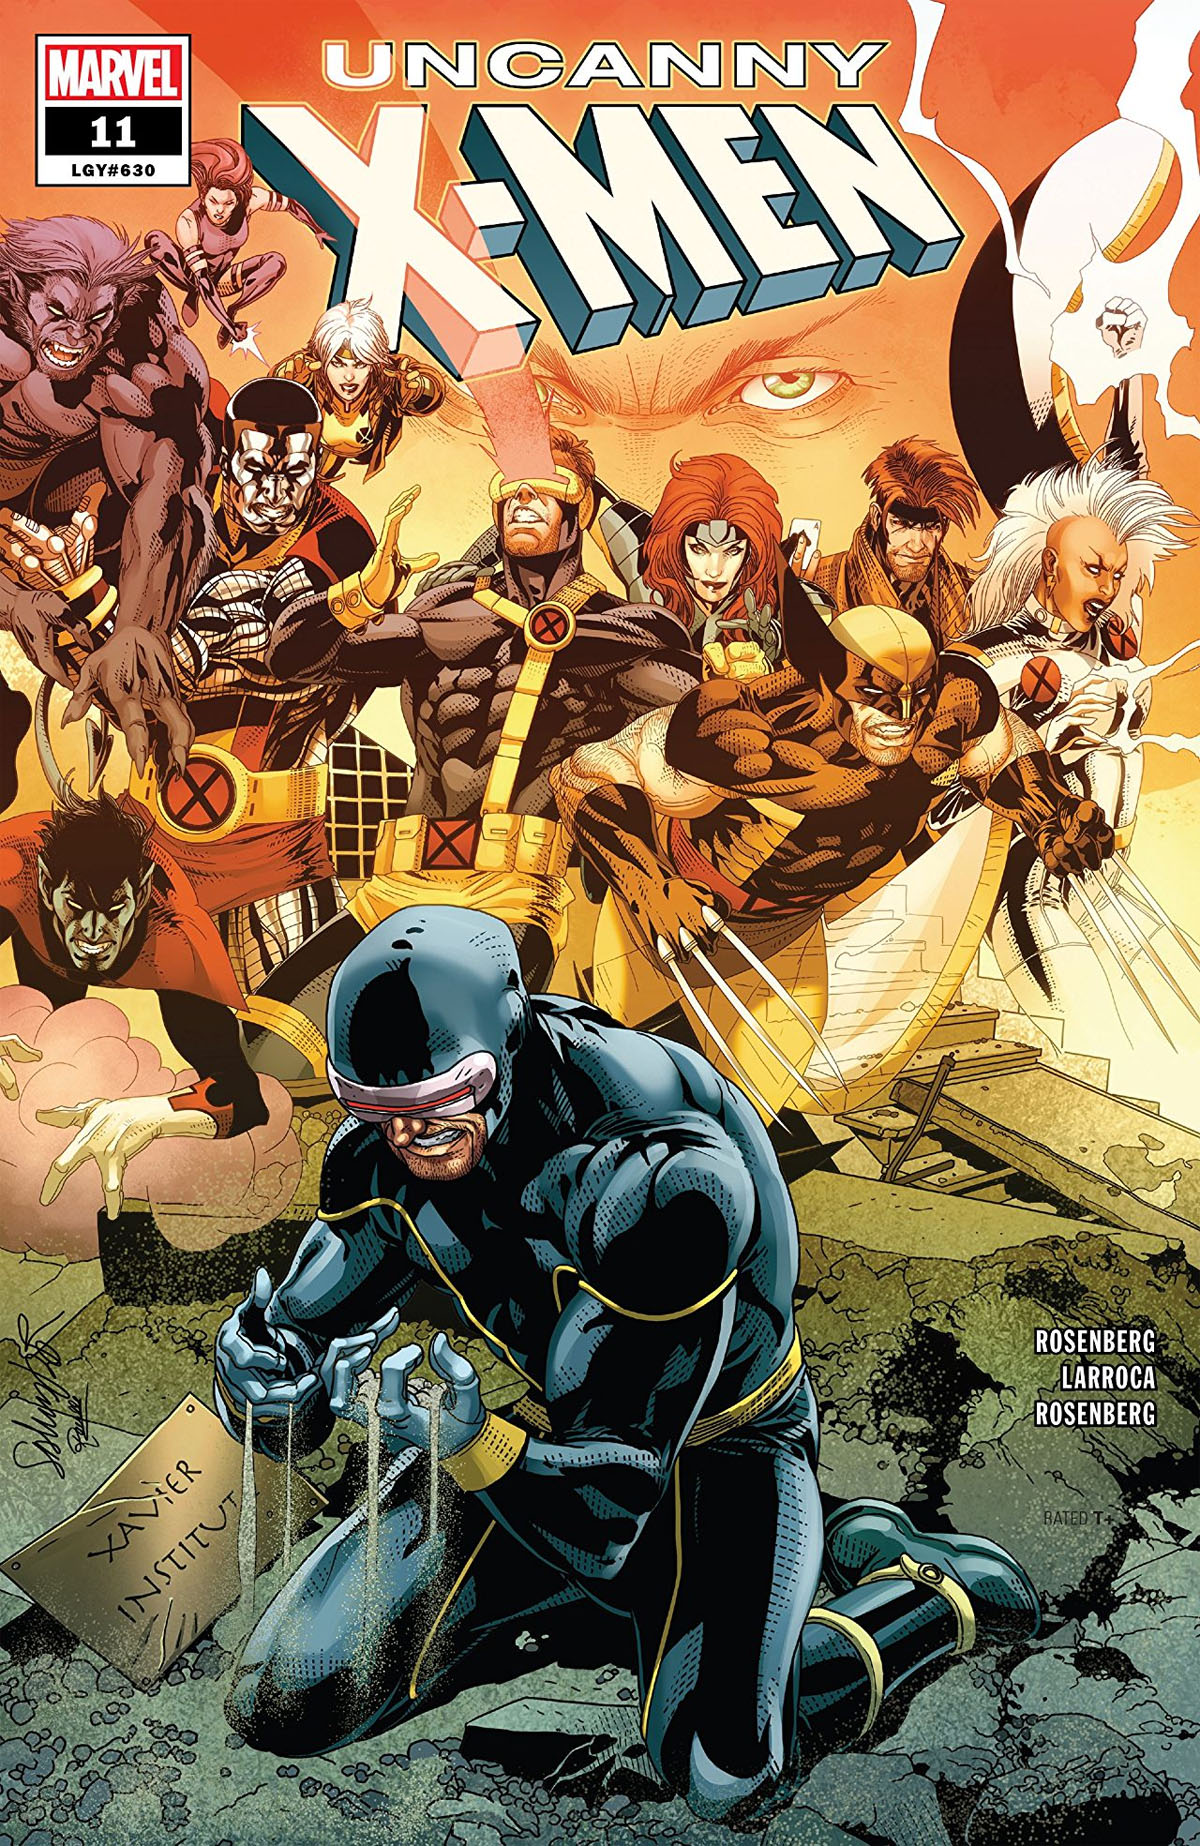 Uncanny X-Men #11 cover